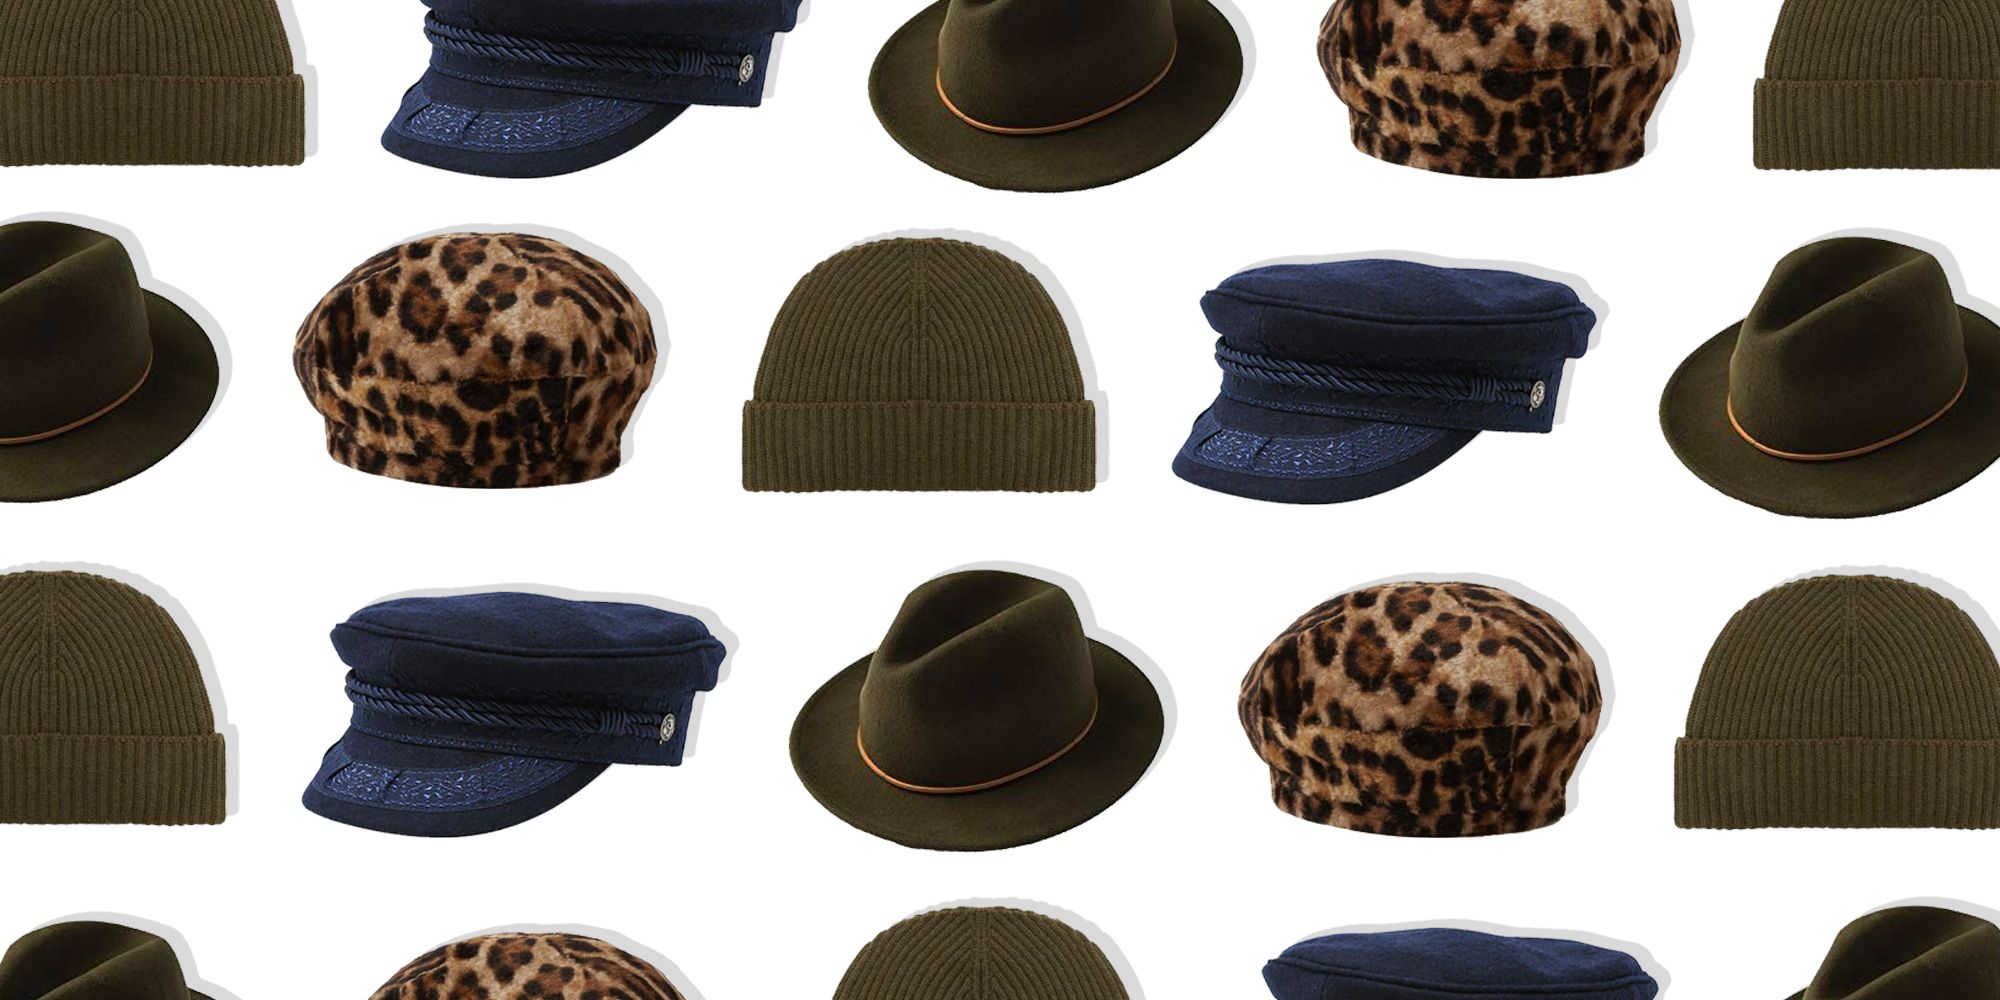 13 Best Fall Hats for Women 2020 - Cute 